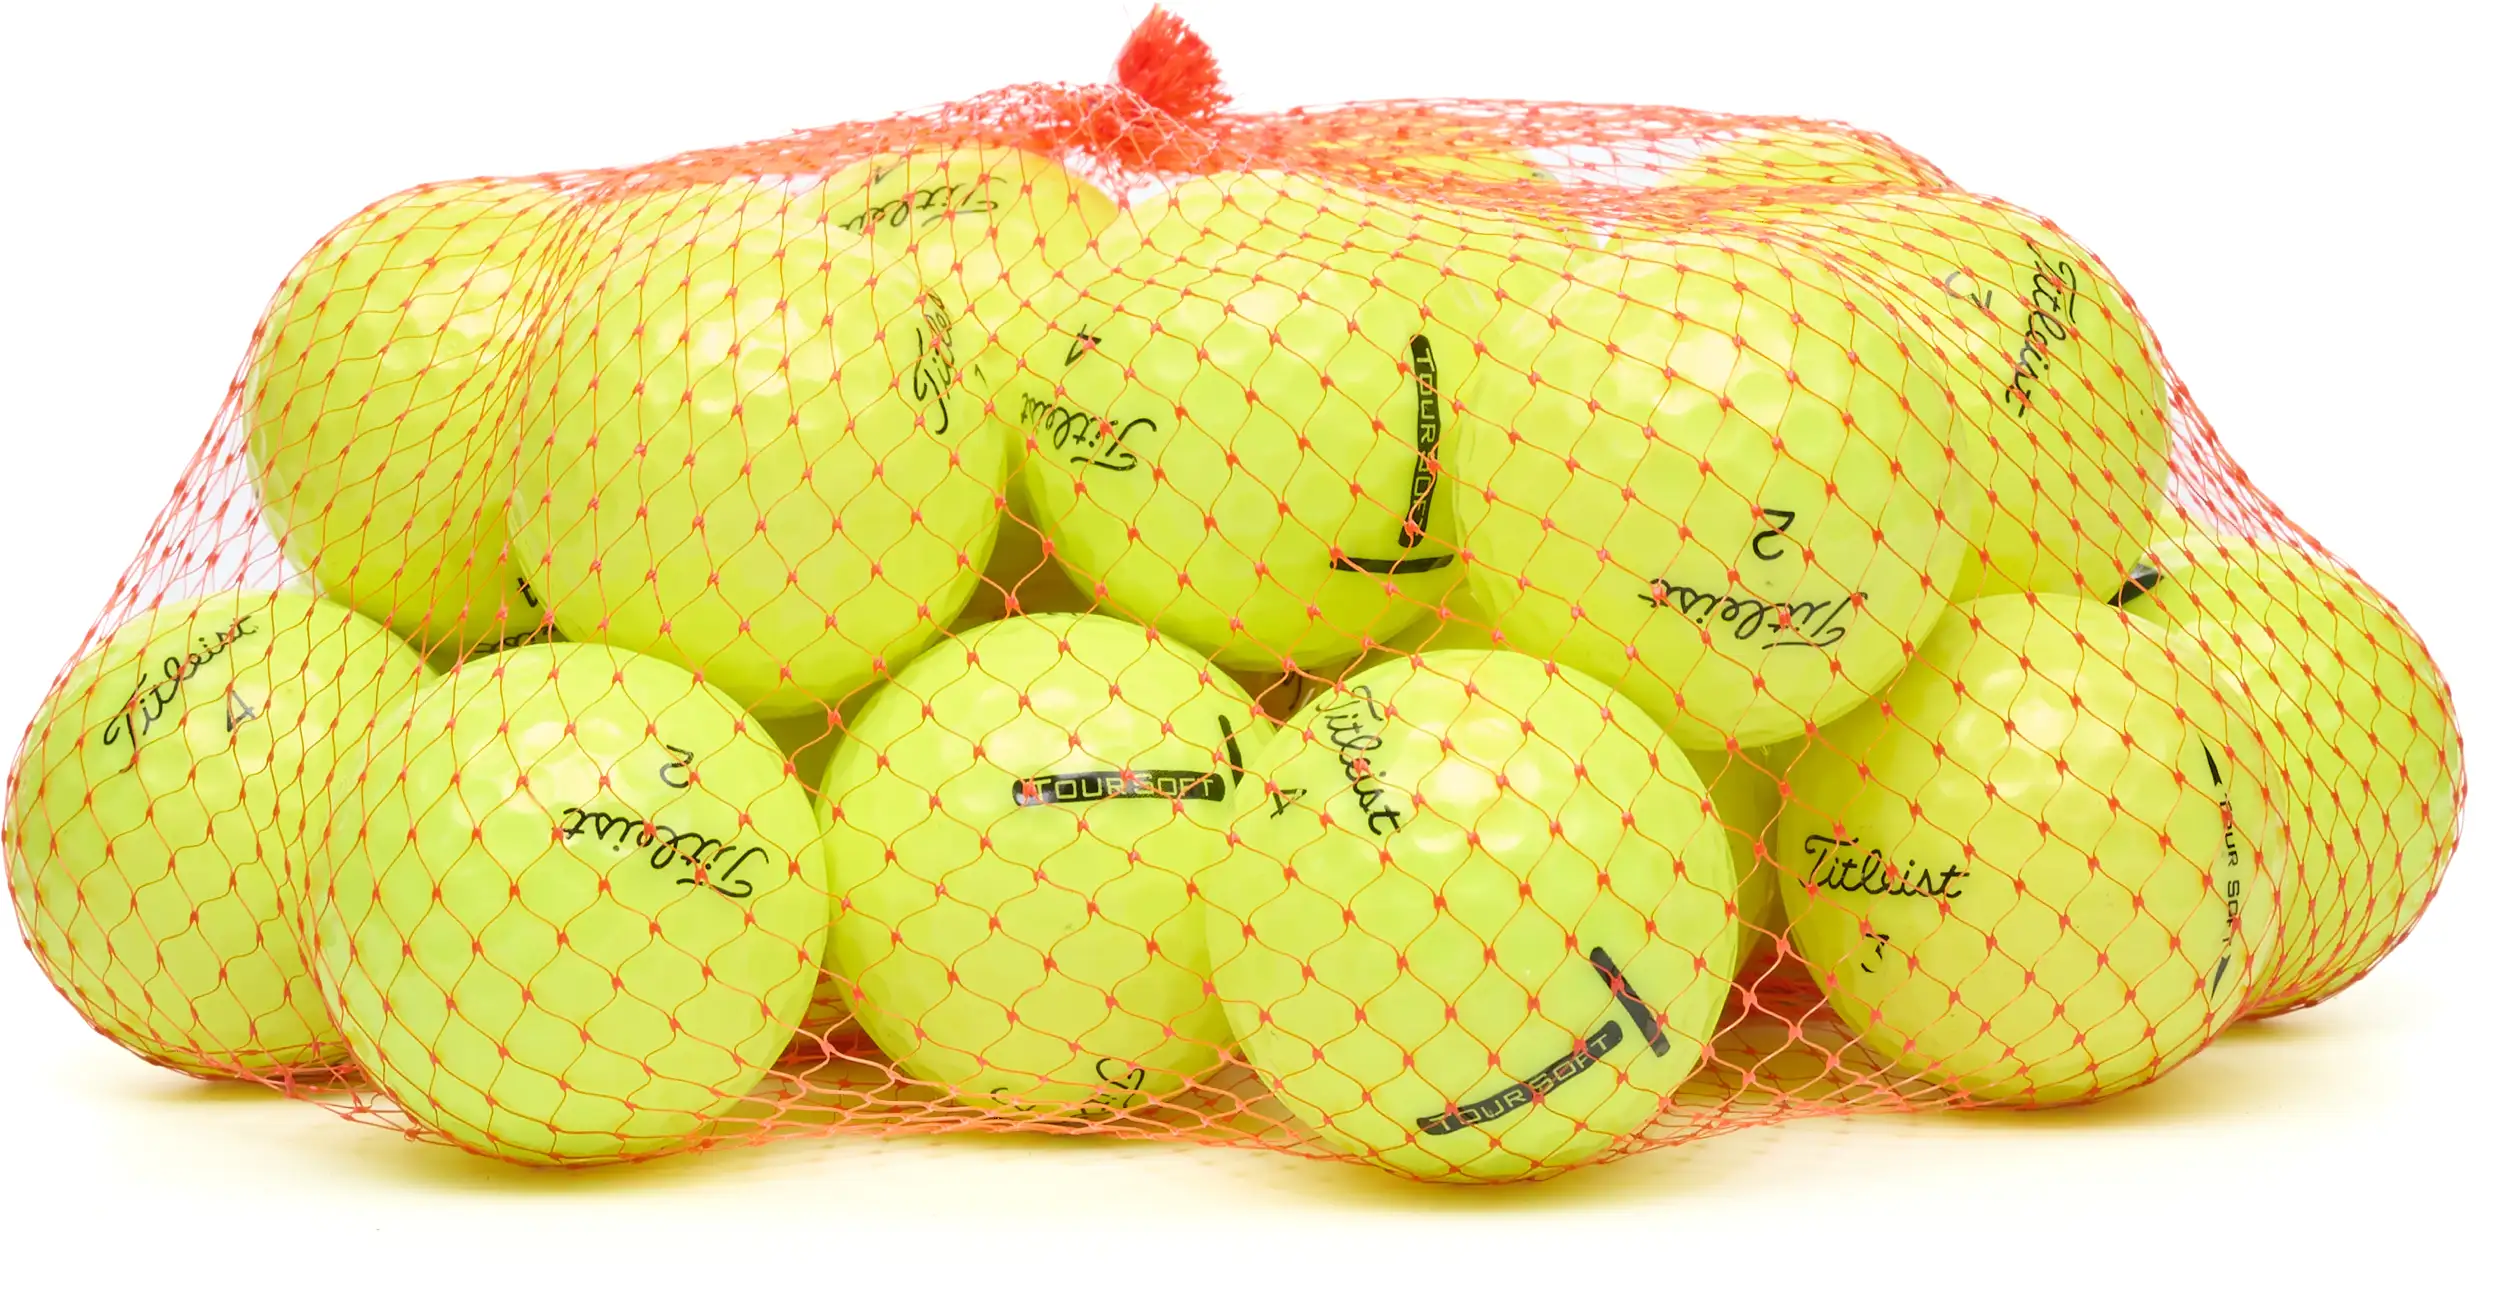 25 Titleist Tour Soft Lakeballs, yellow